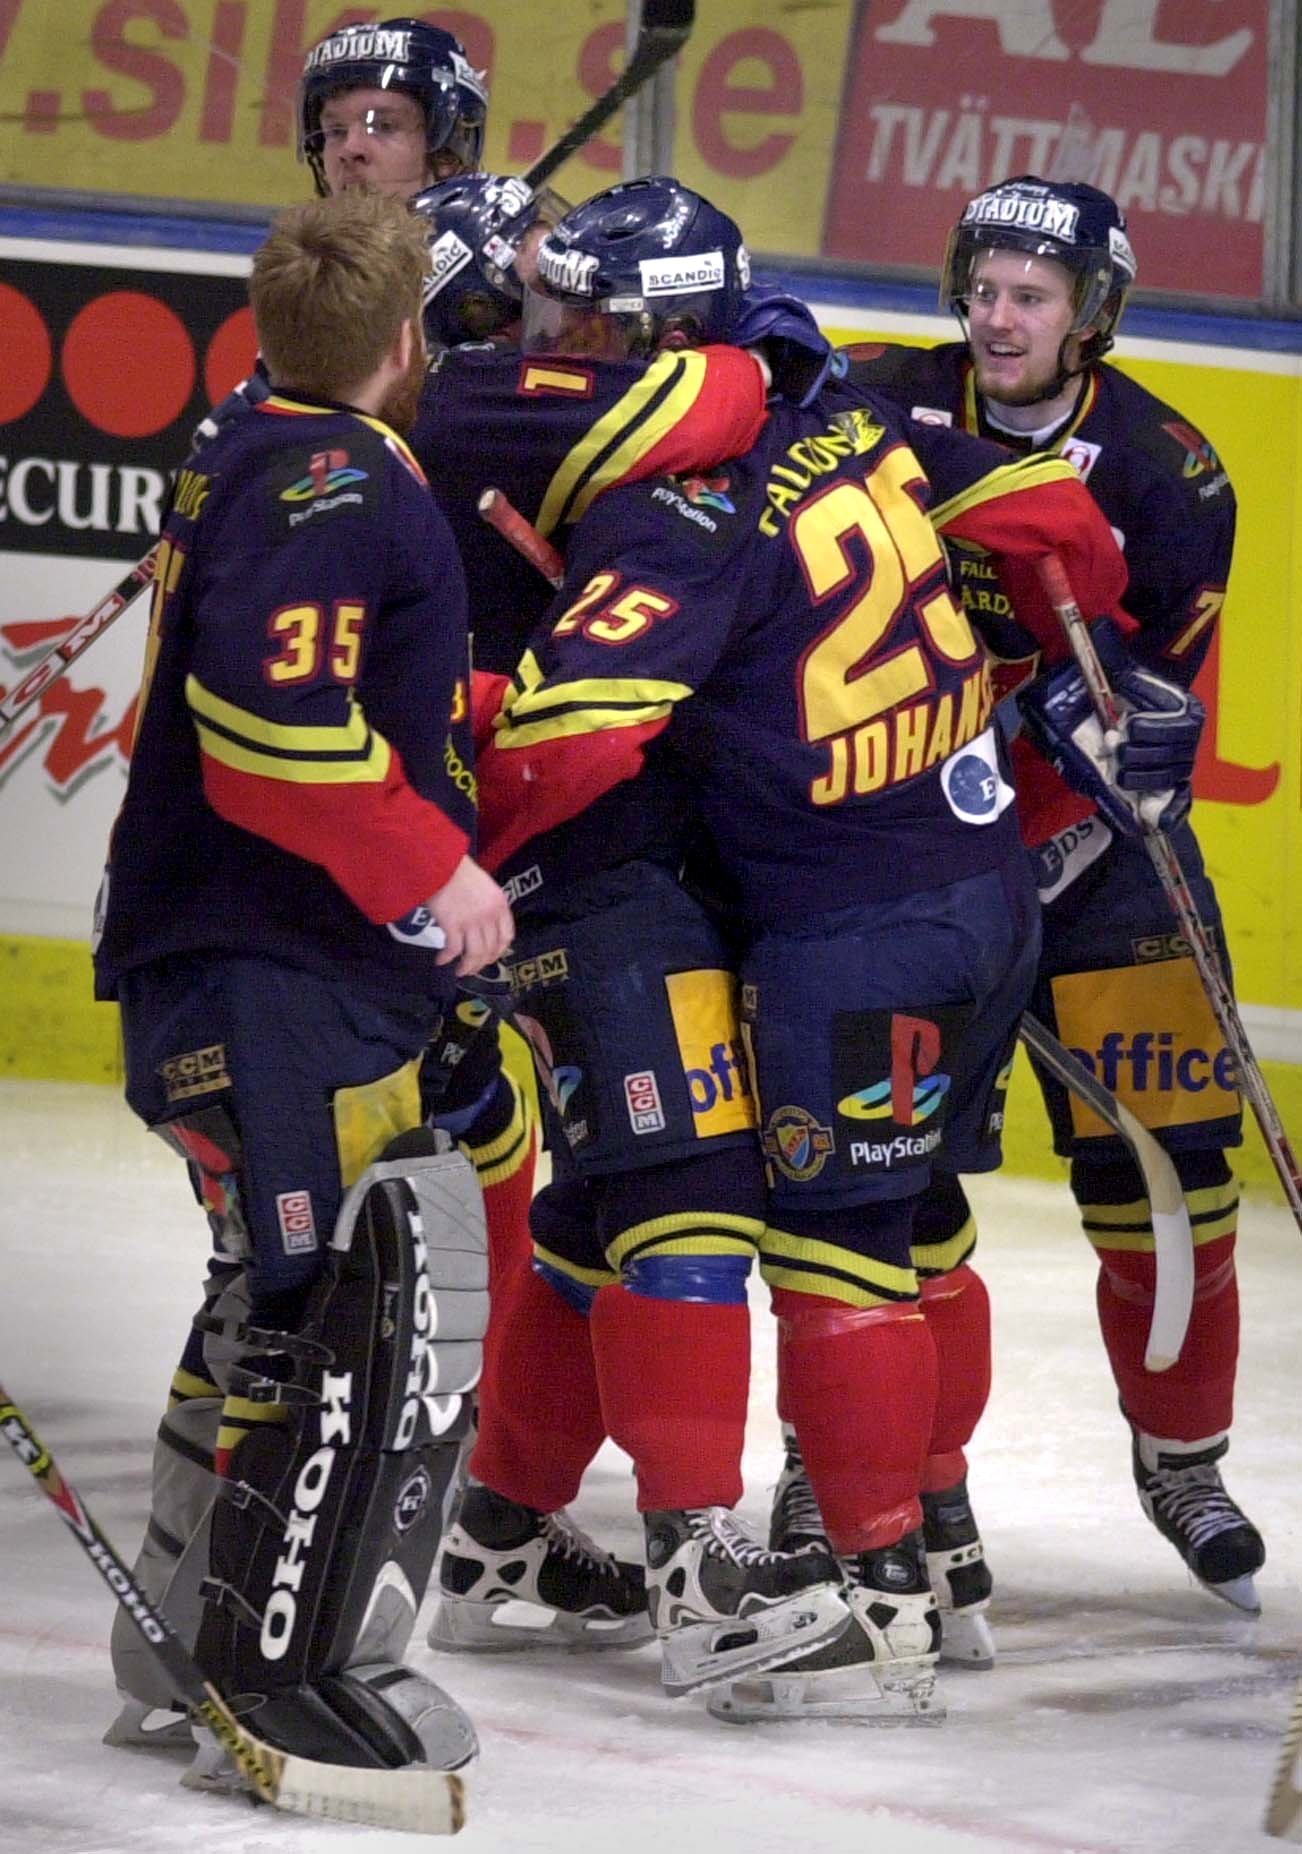 SM-final mellan Djurgården och Färjestad 2001.
Finalmatch nr 5 på Globen i Stockholm. På bilden: Micke Johansson och Djurgården har avgjort i sudden death och firas med kramar av glada lagkamrater.